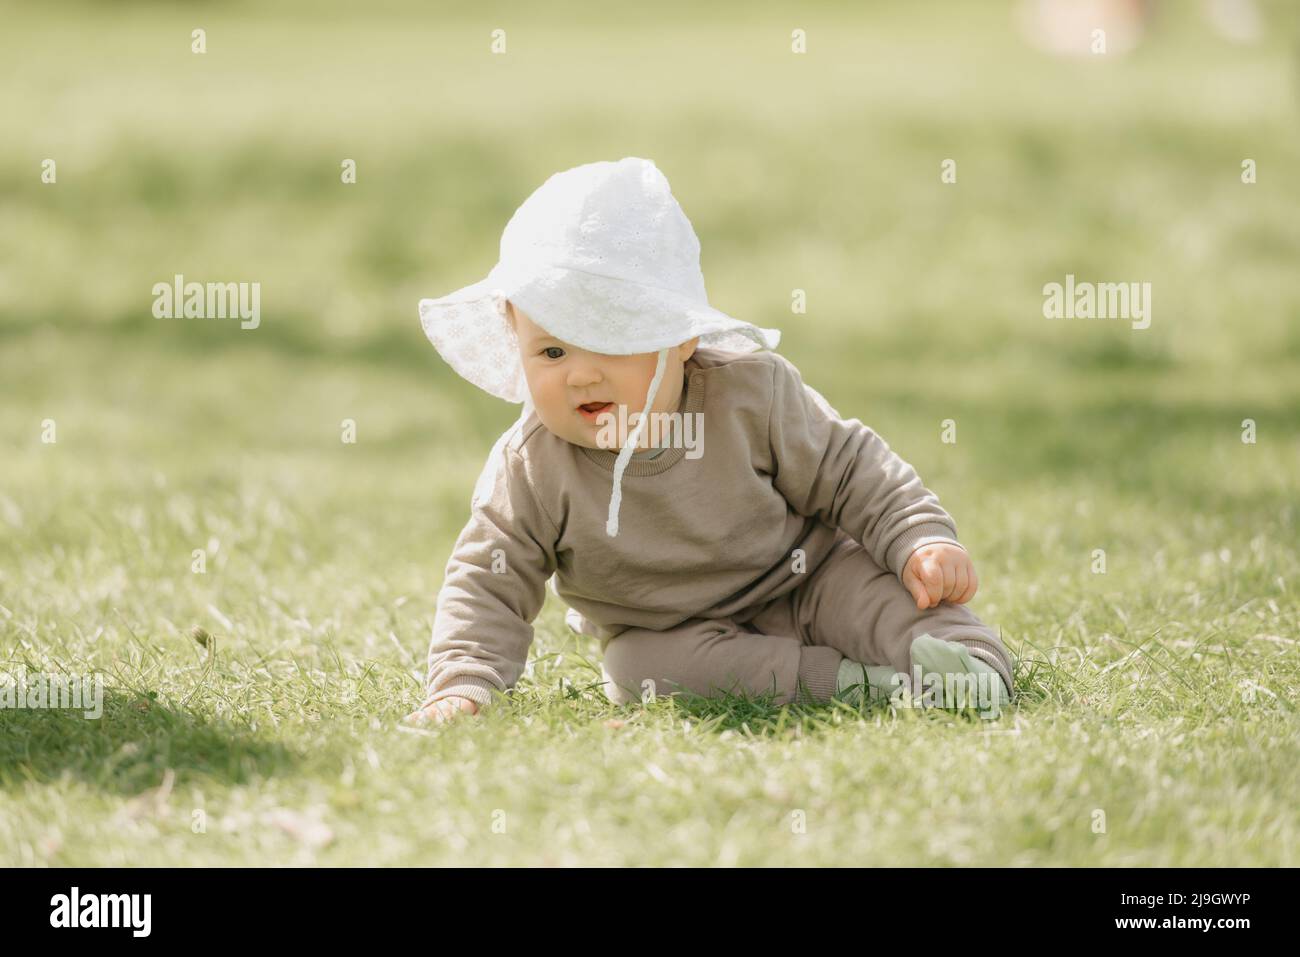 Niño pequeño con sudadera azul y gorra roja 02 Stock Photo